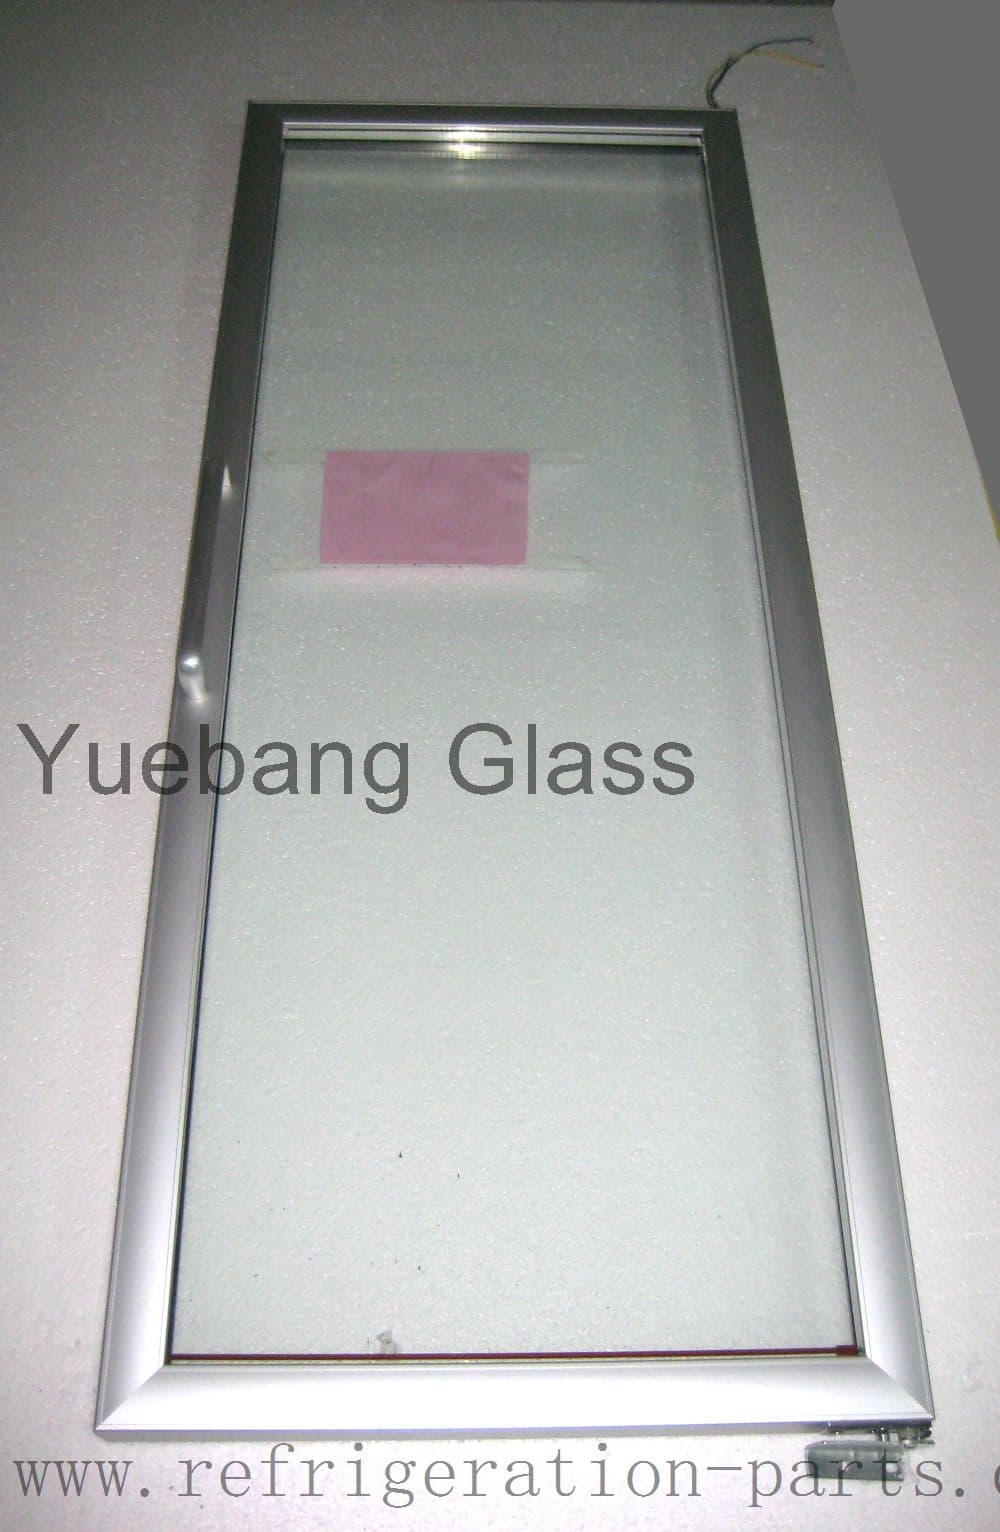  90 Degree Positioning Freezer Glass Door